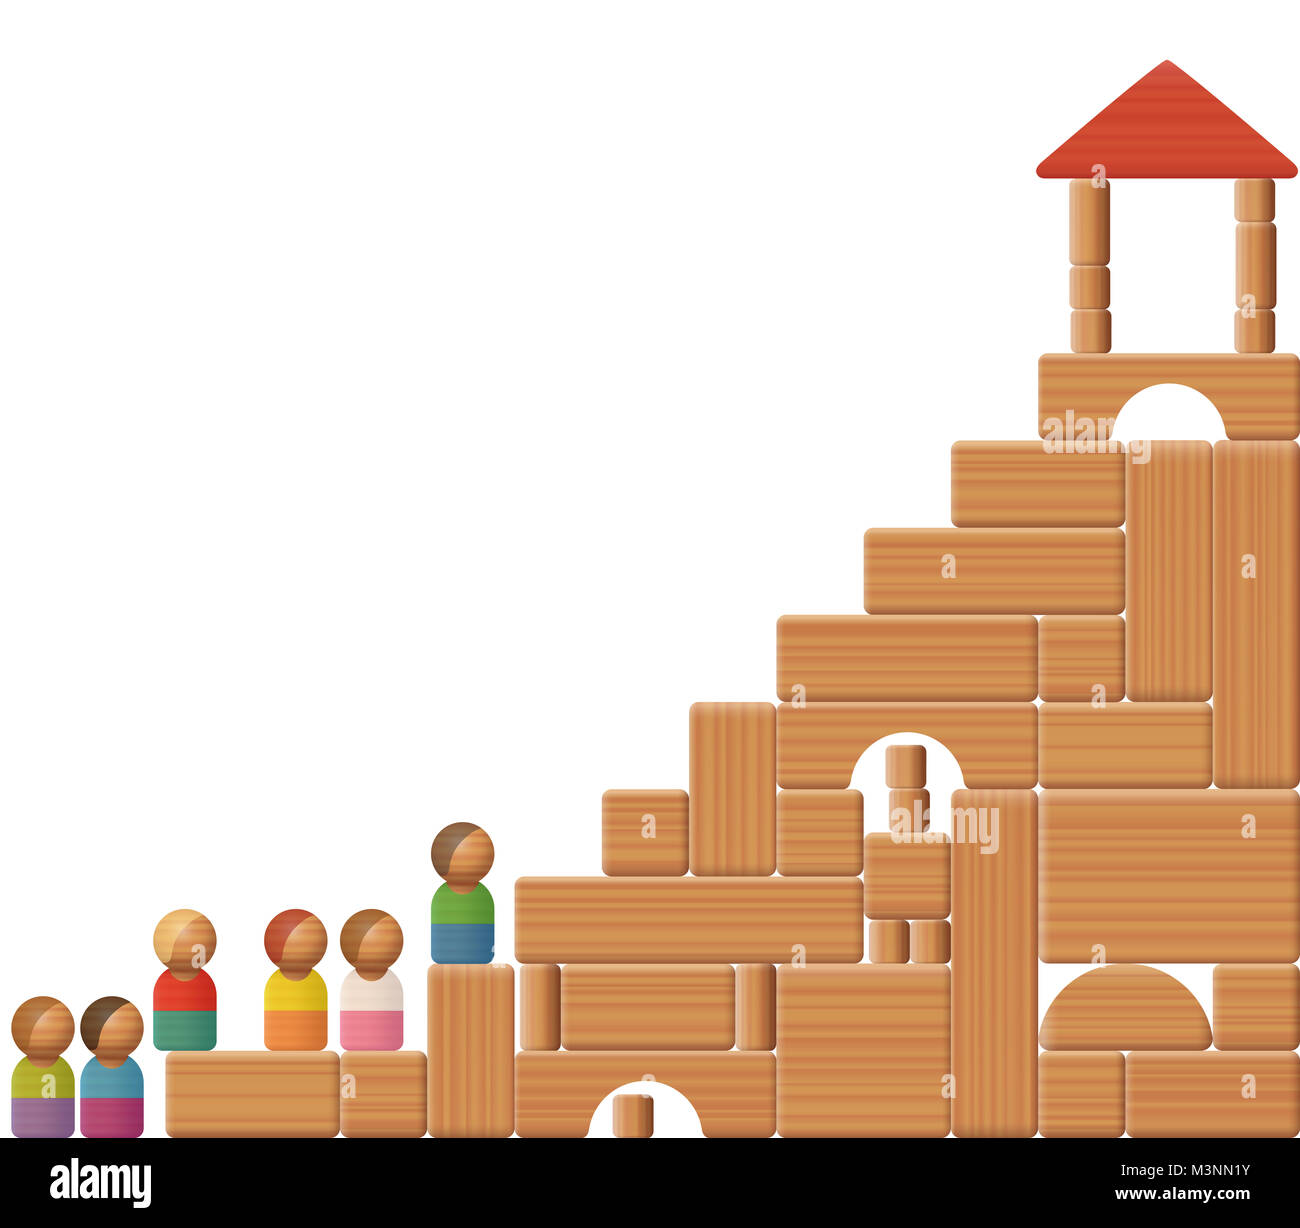 Treppe zum Erfolg mit Bausteinen und Spielzeug Abbildungen dargestellt. Symbol für Bildung, Karriere, erhöhen, Wachstum, Entwicklung, Wohlstand oder Sieg. Stockfoto